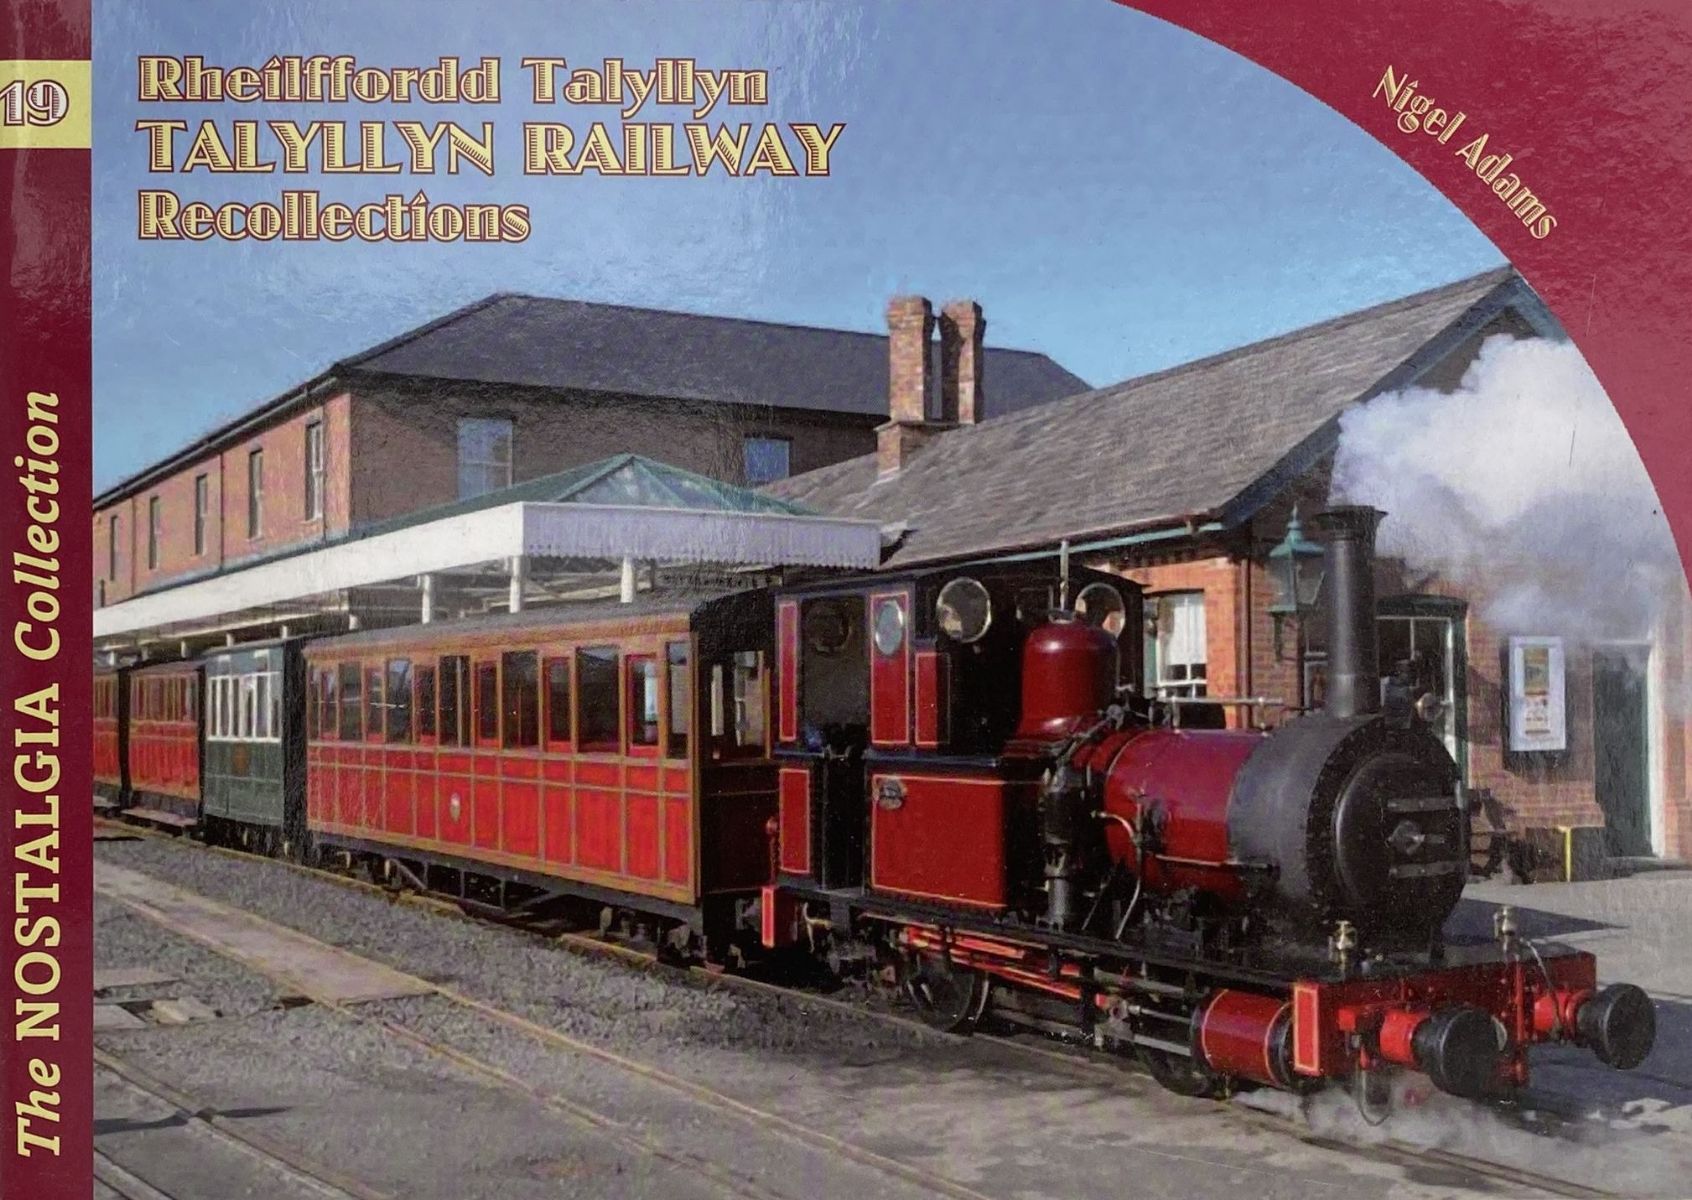 RHEILFFORDD TALYLLYN Railway Recollections